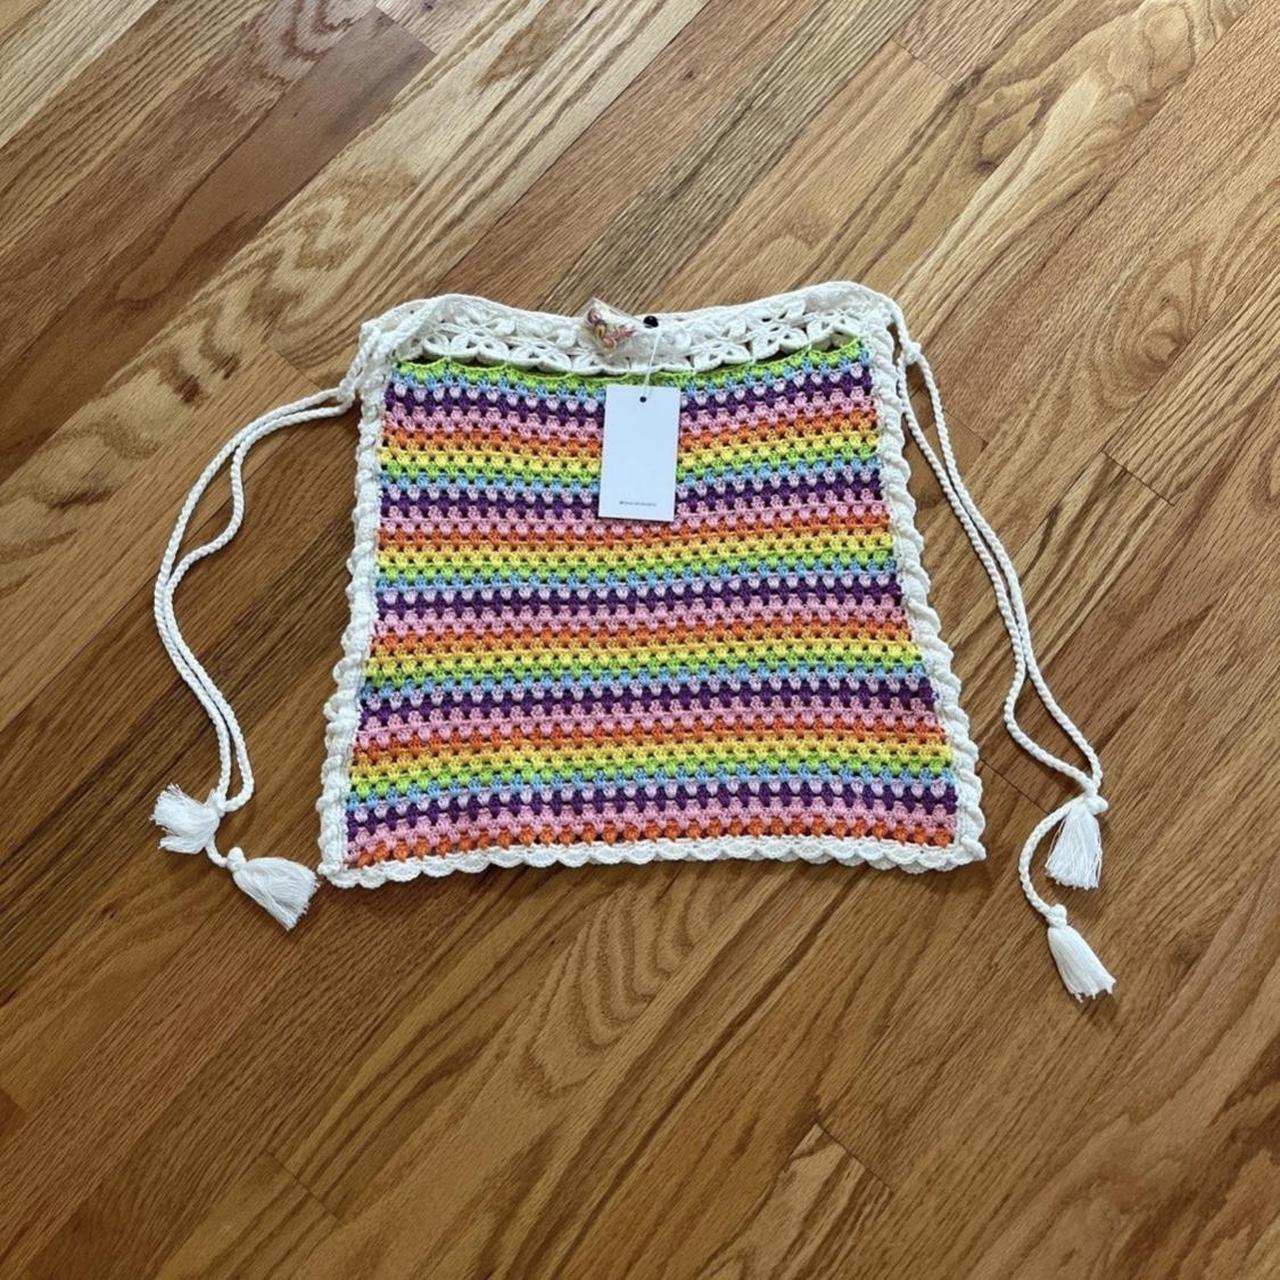 Orange Rainbow friends: Crochet pattern